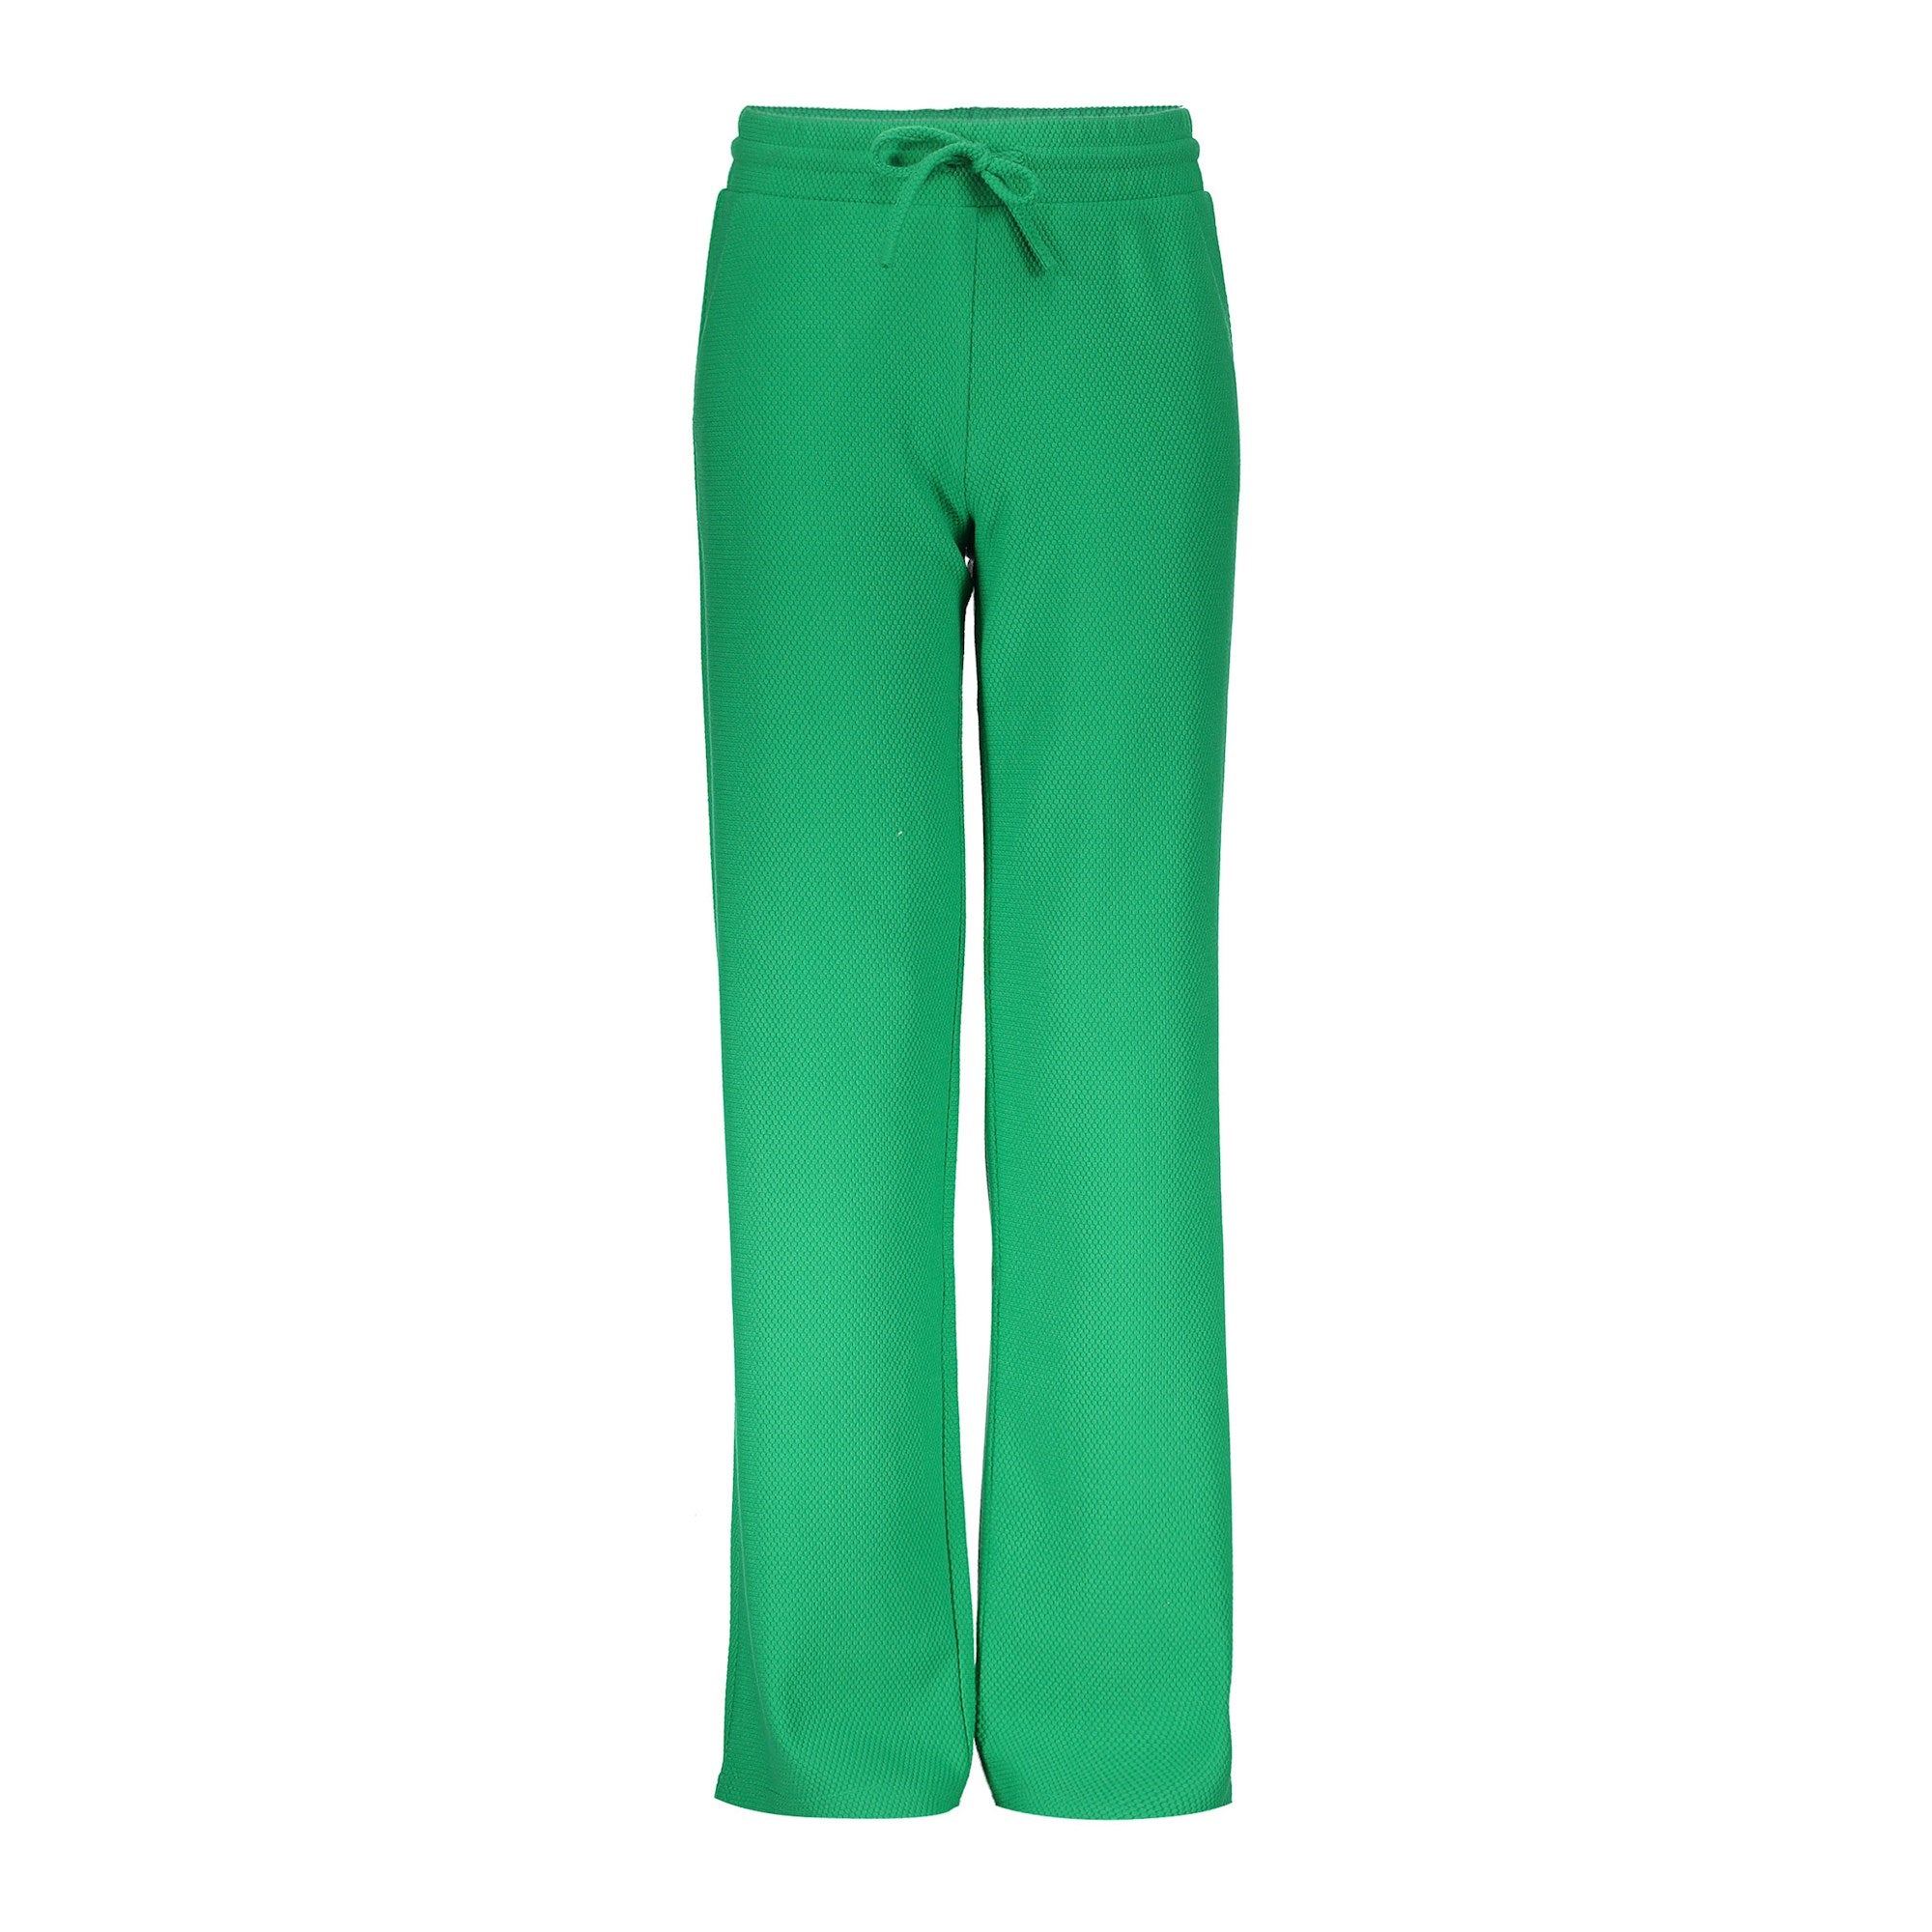 Meisjes Pants wide comfy van Geisha in de kleur Green in maat 176.